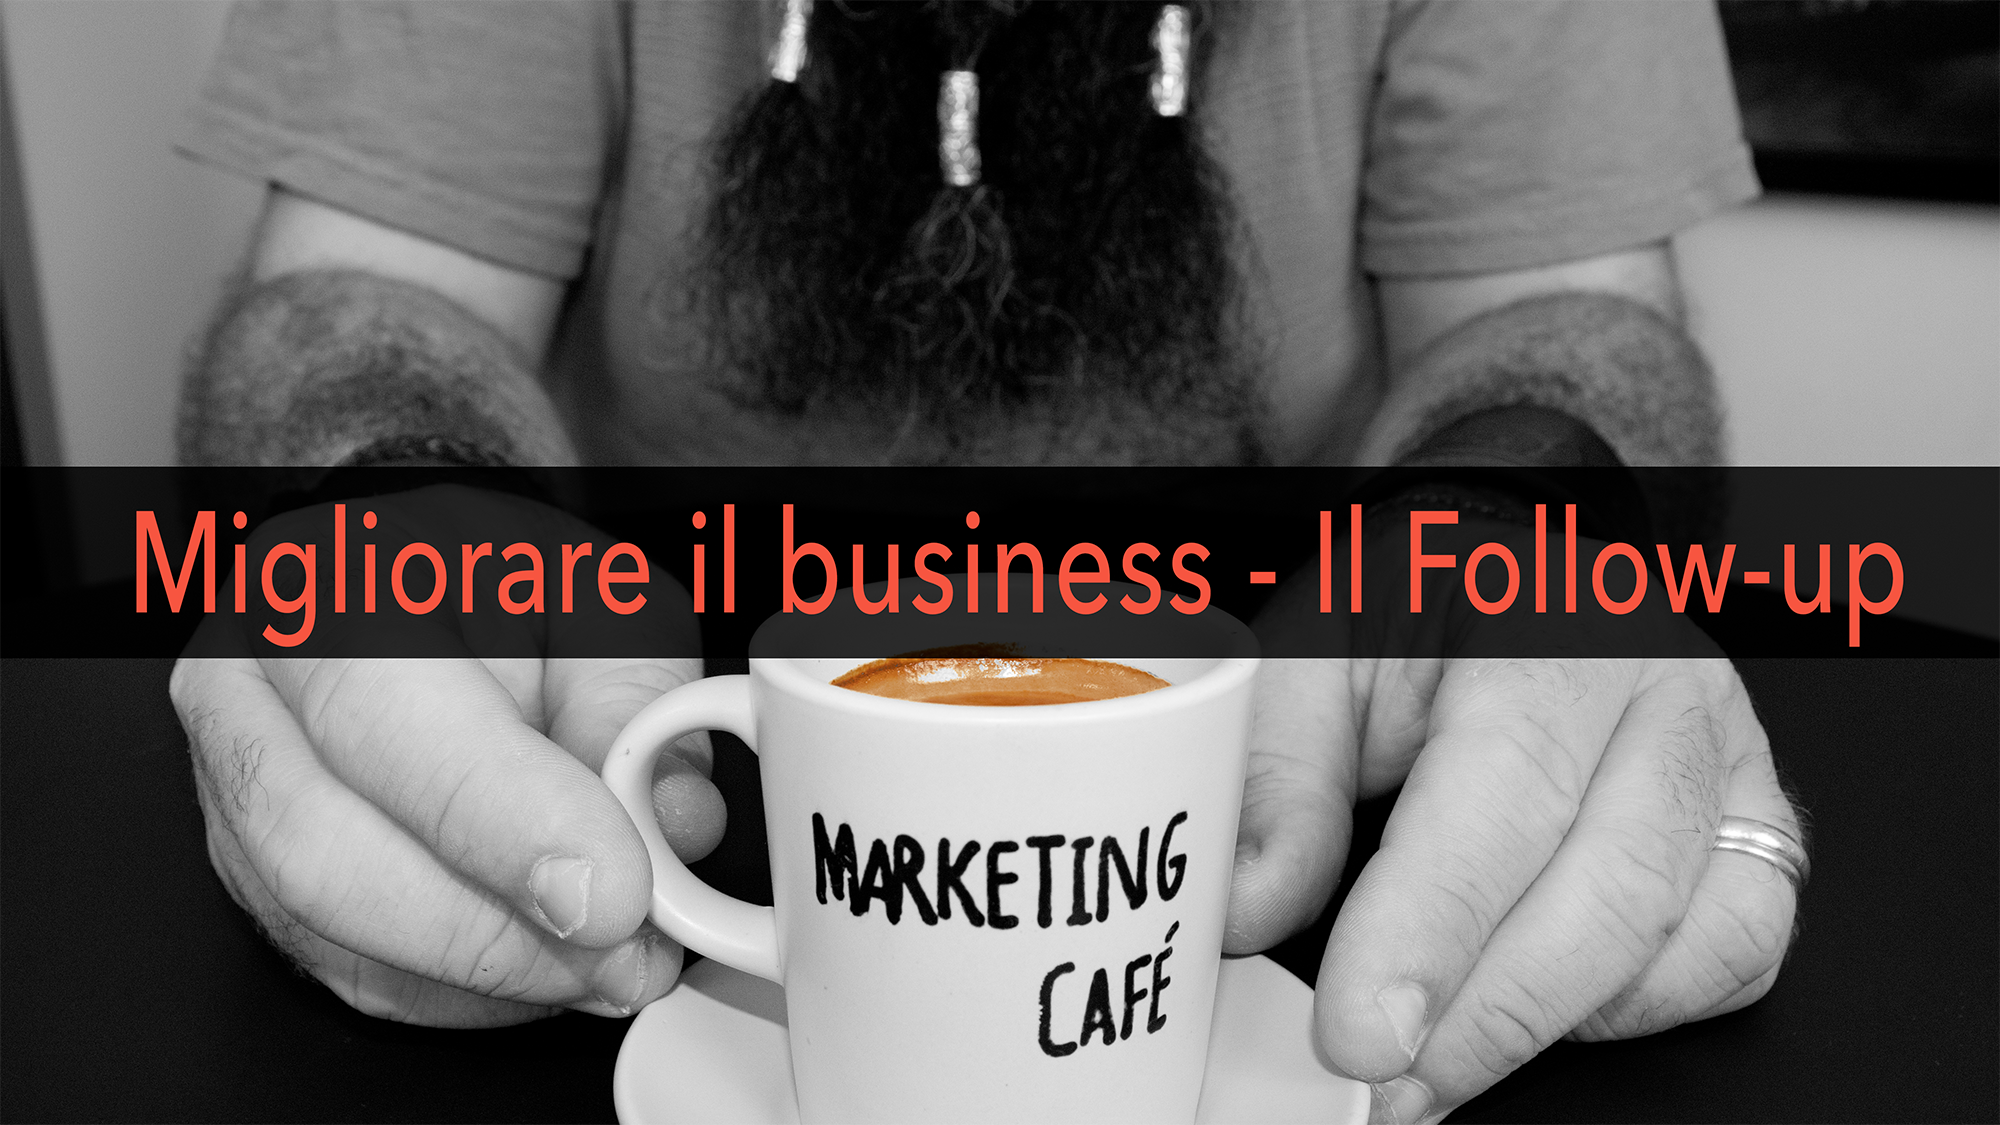 Marketing Café - Come far crescere la tua azienda: il follow-up